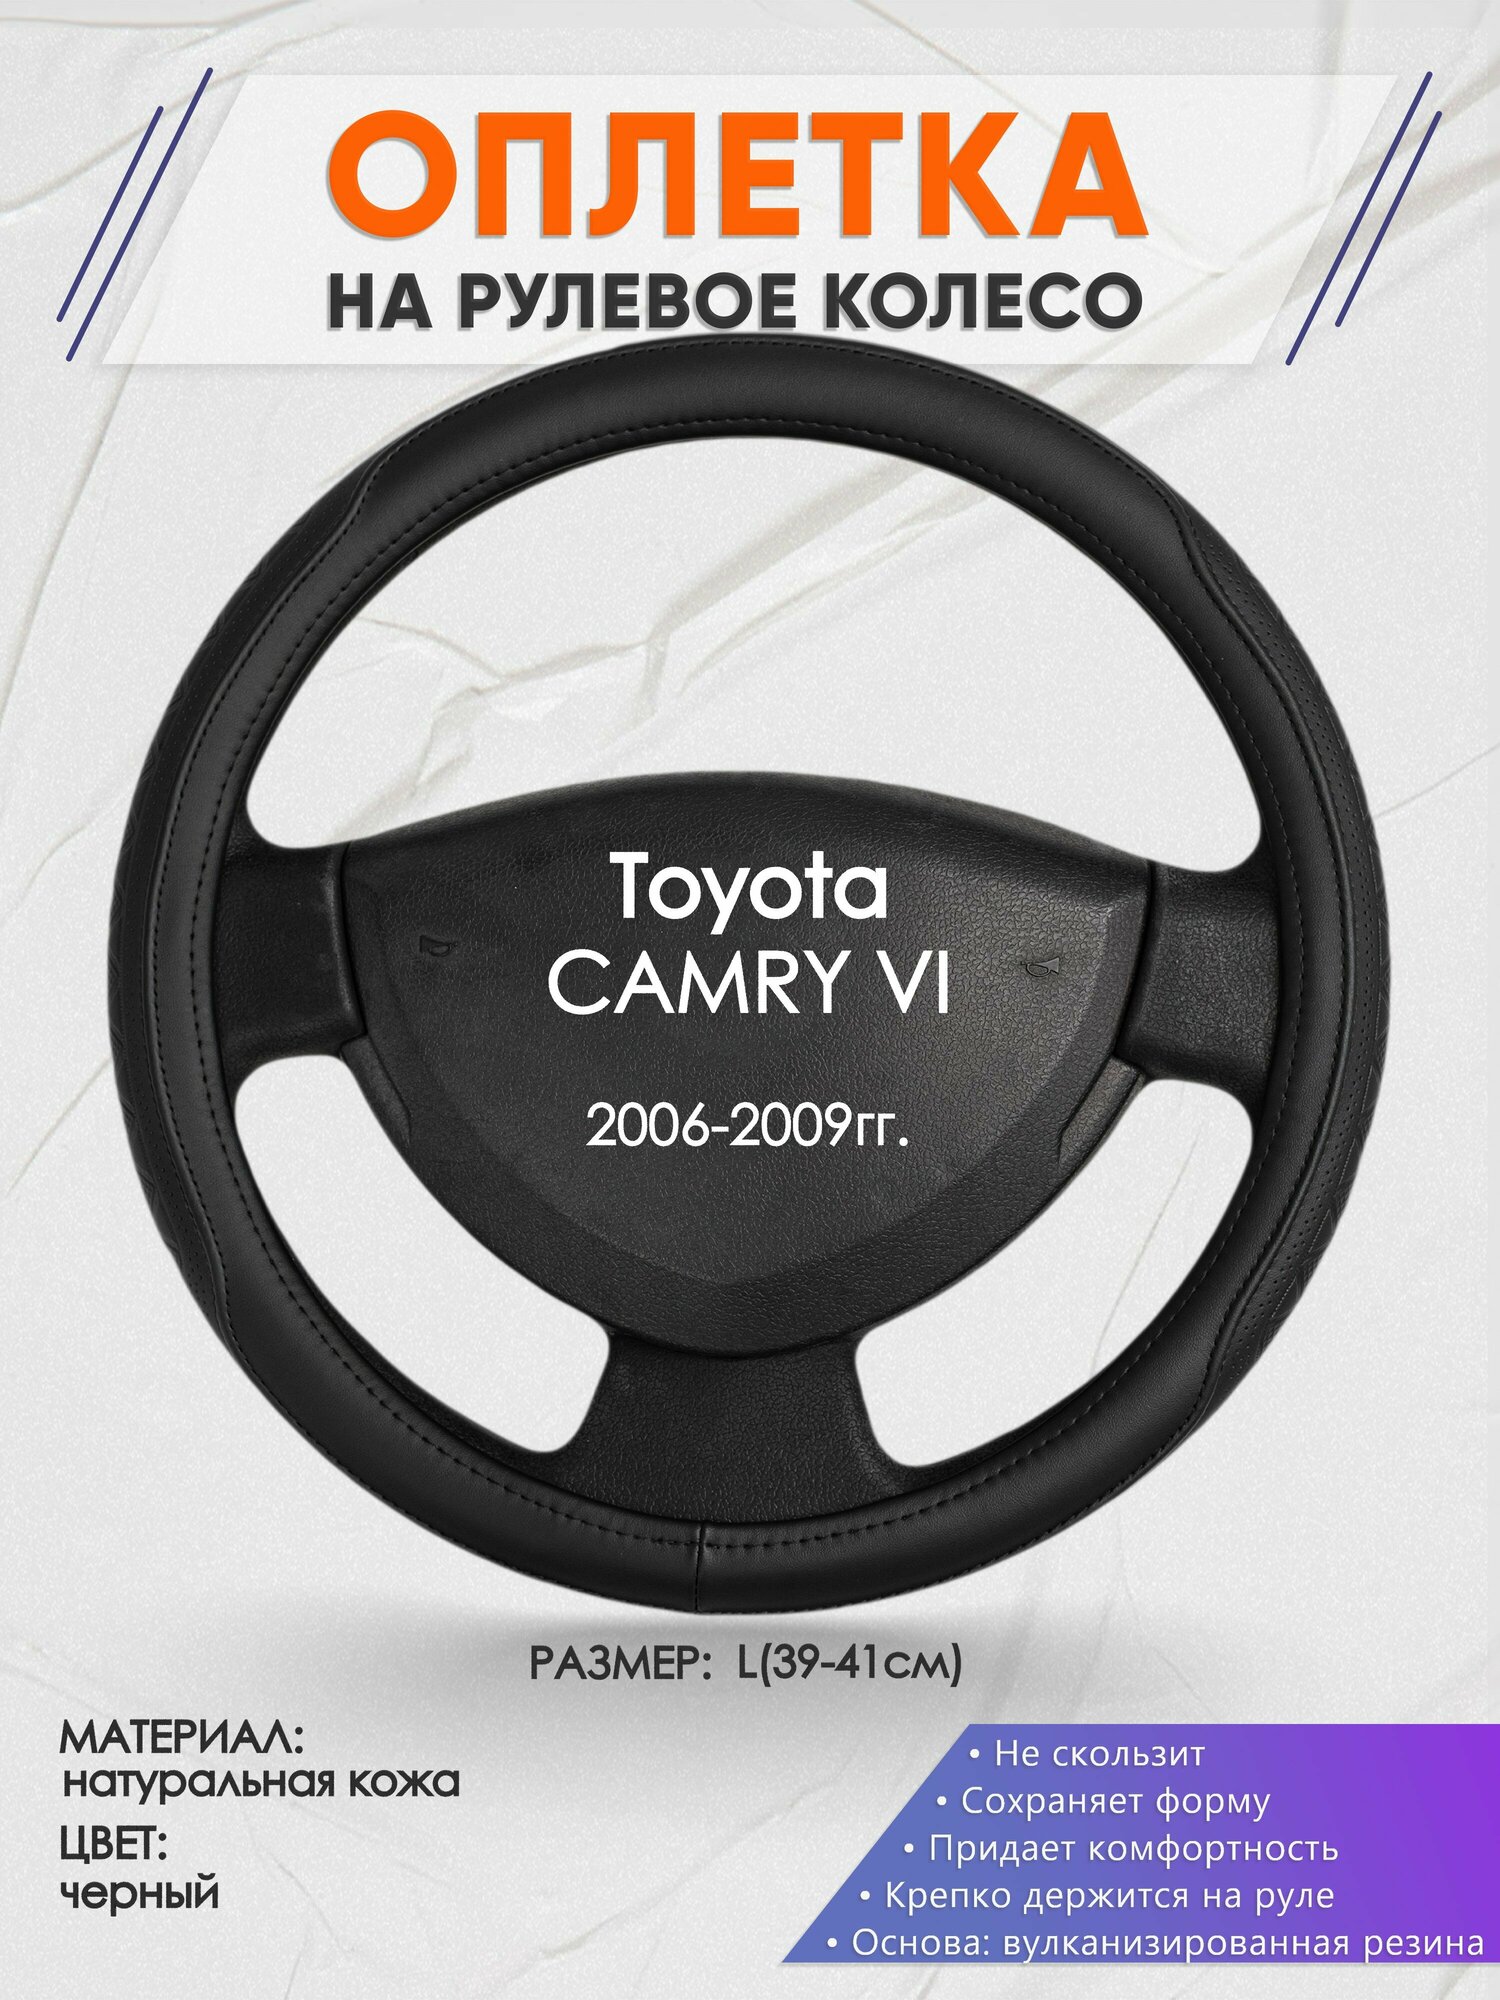 Оплетка на руль для Toyota CAMRY 6(Тойота Камри 6) 2006-2009, L(39-41см), Натуральная кожа 28